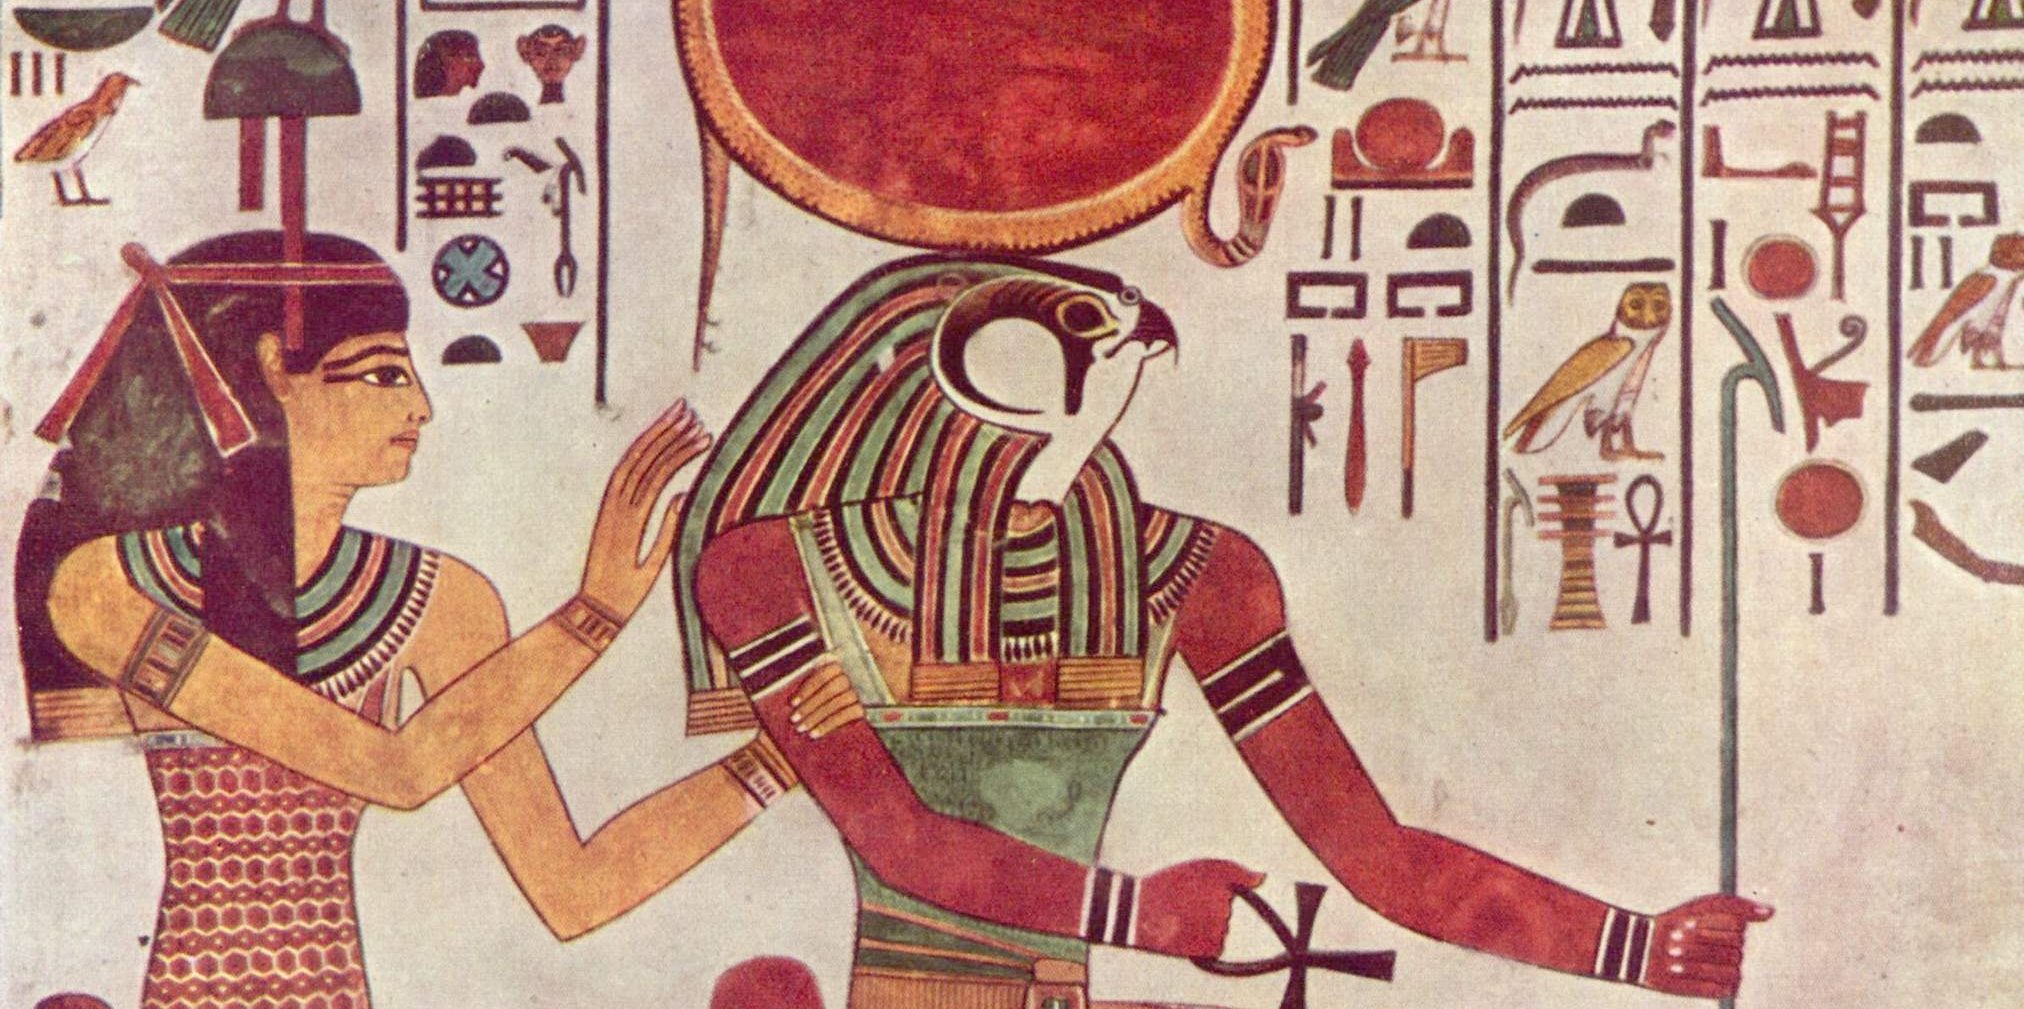 Бог ра в древнем египте фото